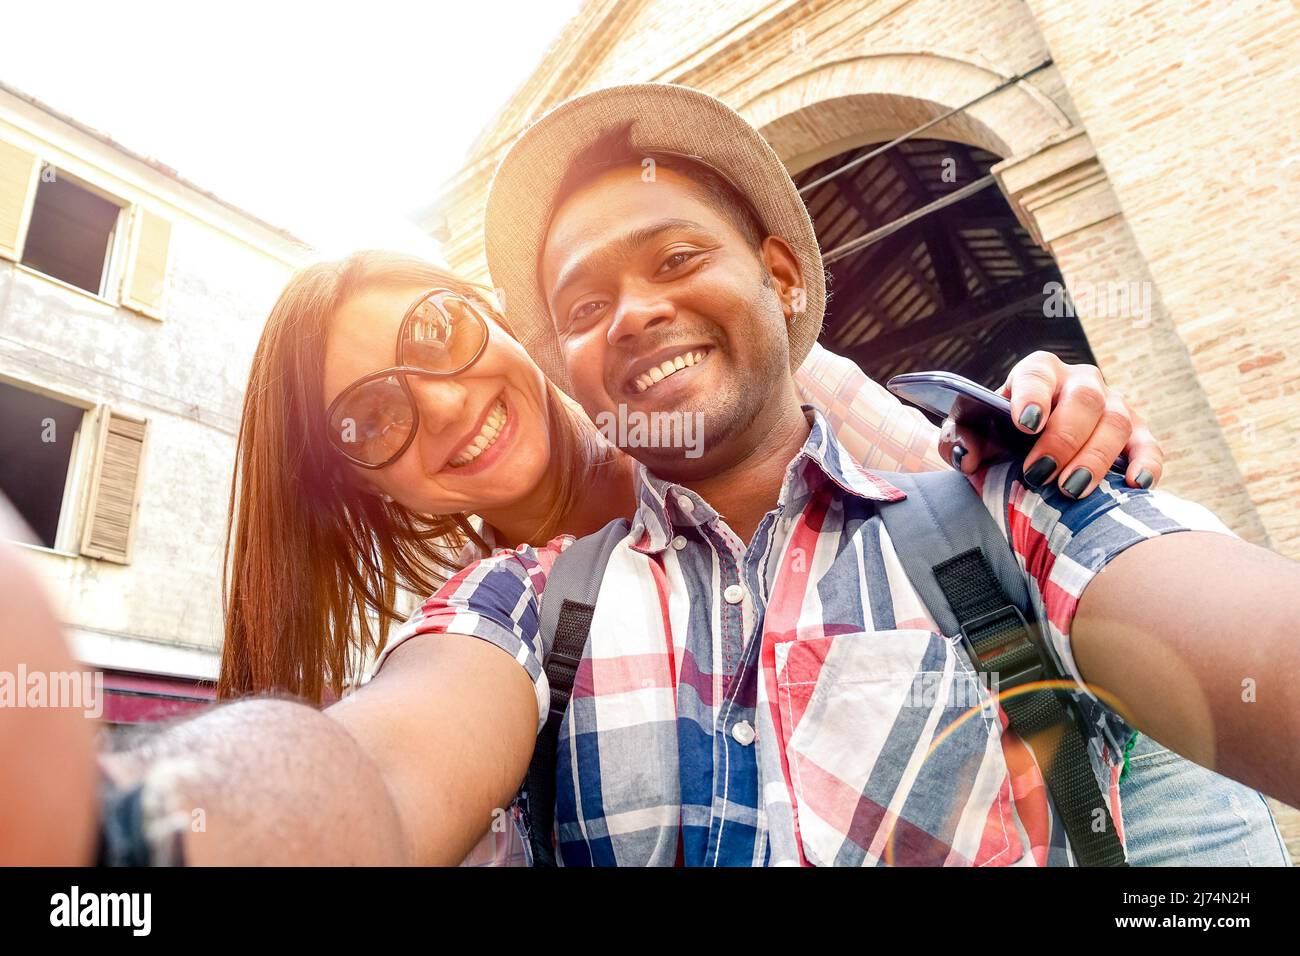 Pareja multirracial tomando selfie en el viaje de la vieja ciudad - Concepto divertido con viajeros de moda alternativa - novio indio con novia caucásica - cálido Foto de stock